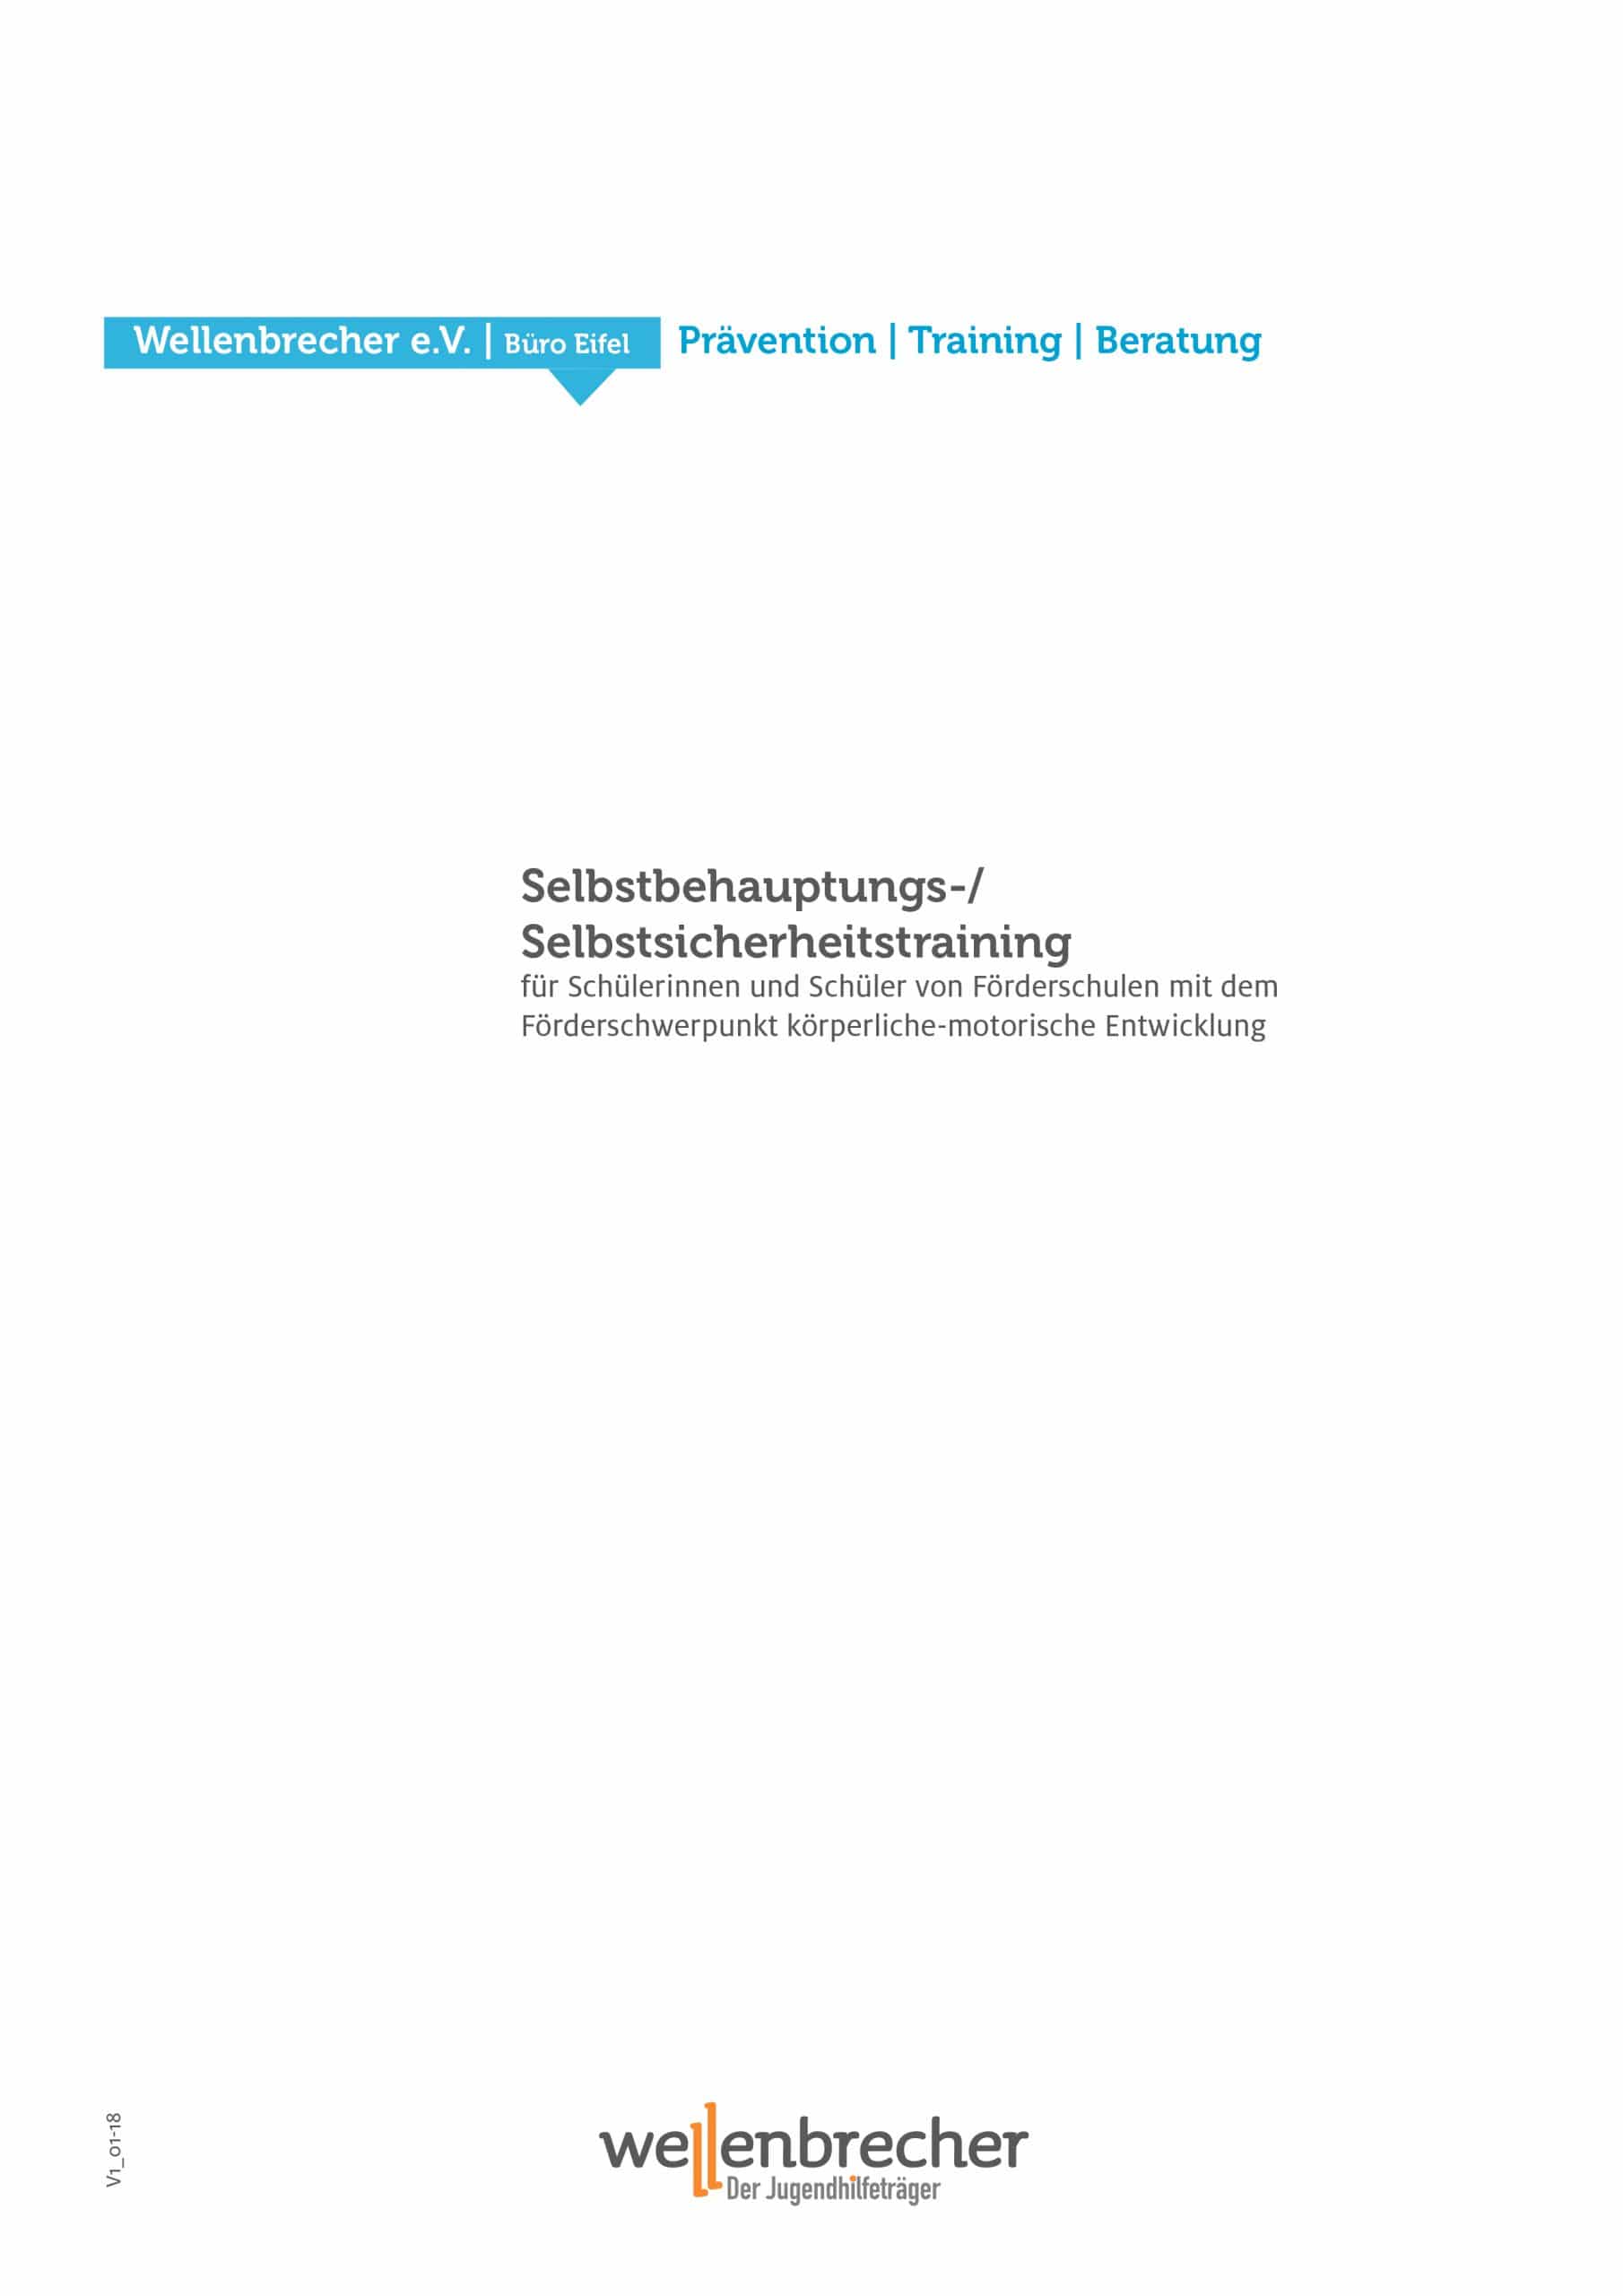 Titelseite Fortbildung Selbstbehauptungs-/Selbstsicherheitstraining für Schülerinnen und Schüler von Förderschulen mit dem Förderschwerpunkt körperliche-motorische Entwicklung